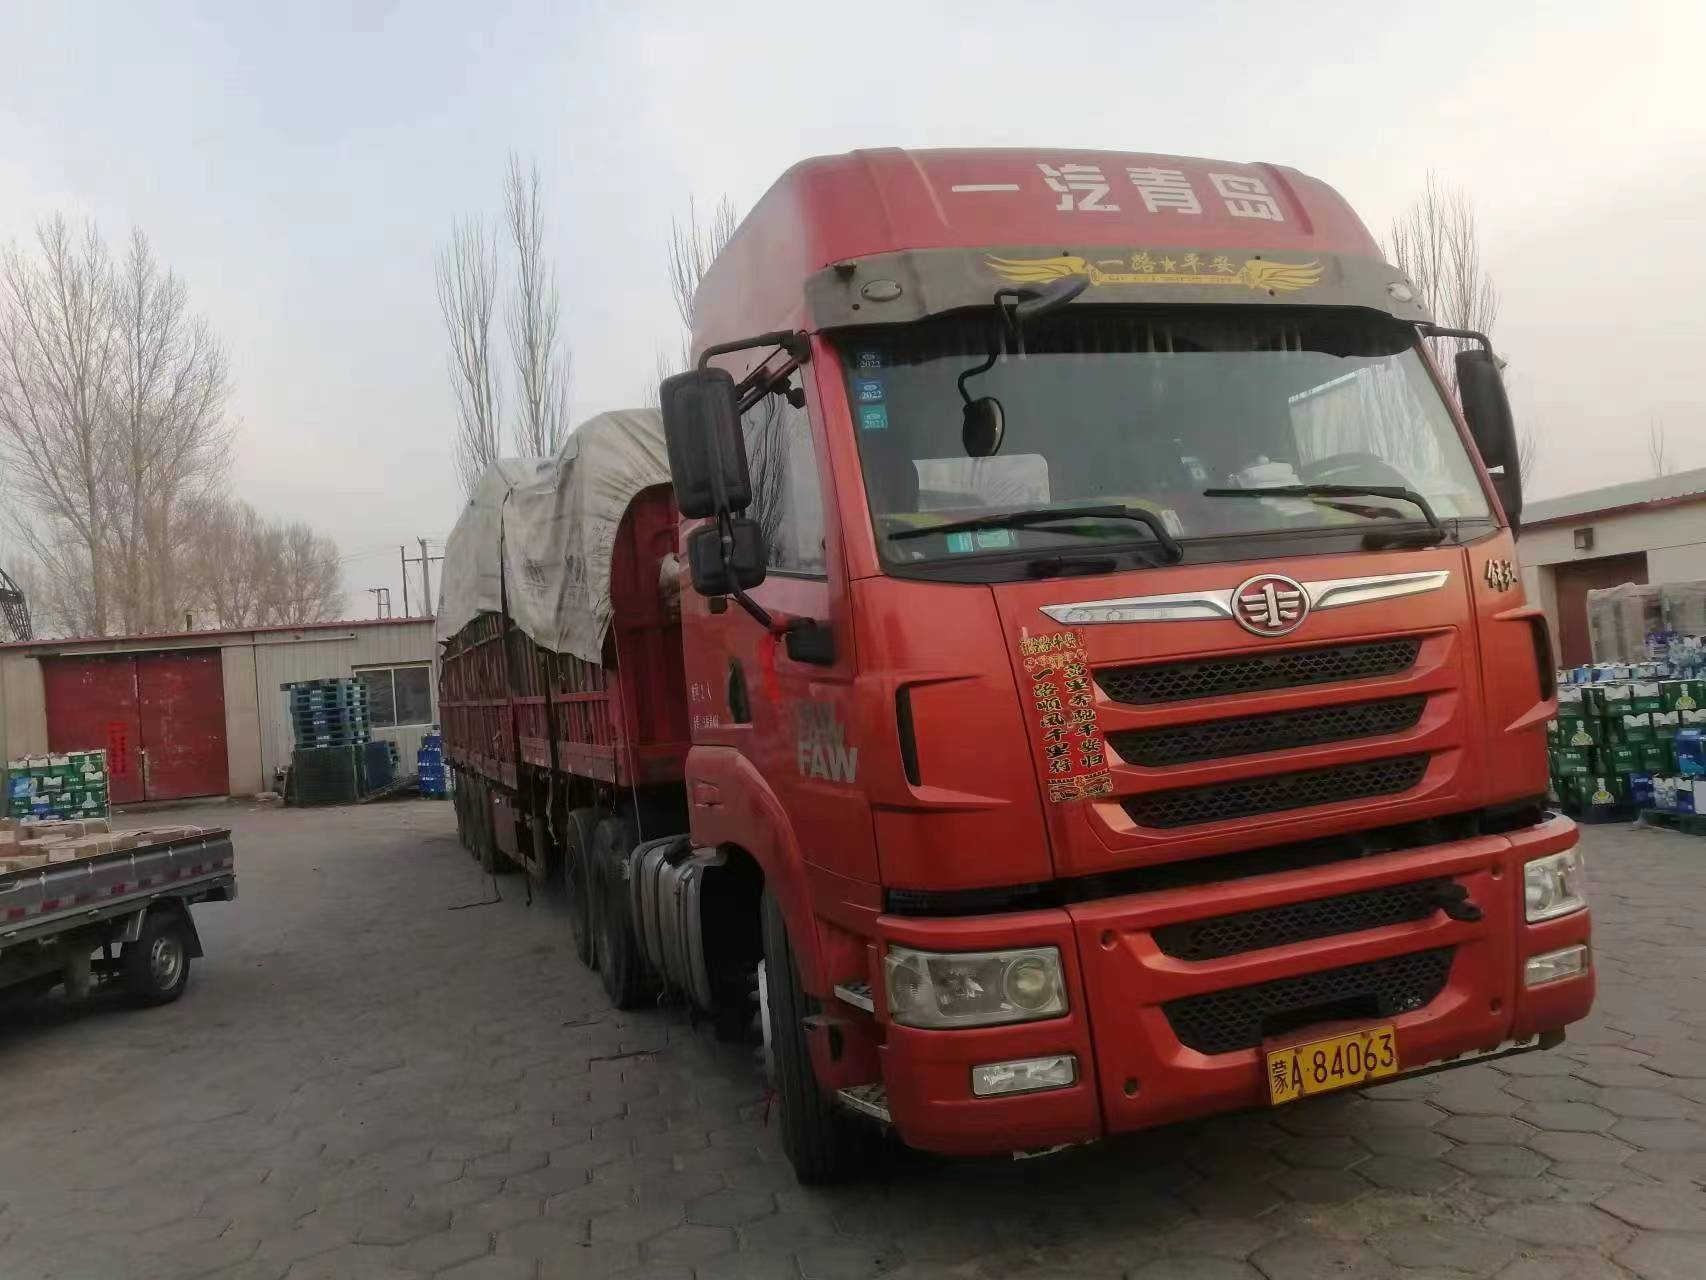 郑州发台州公路运输 长途专线 整车零担 大件货运全国    郑州到台州普货物流